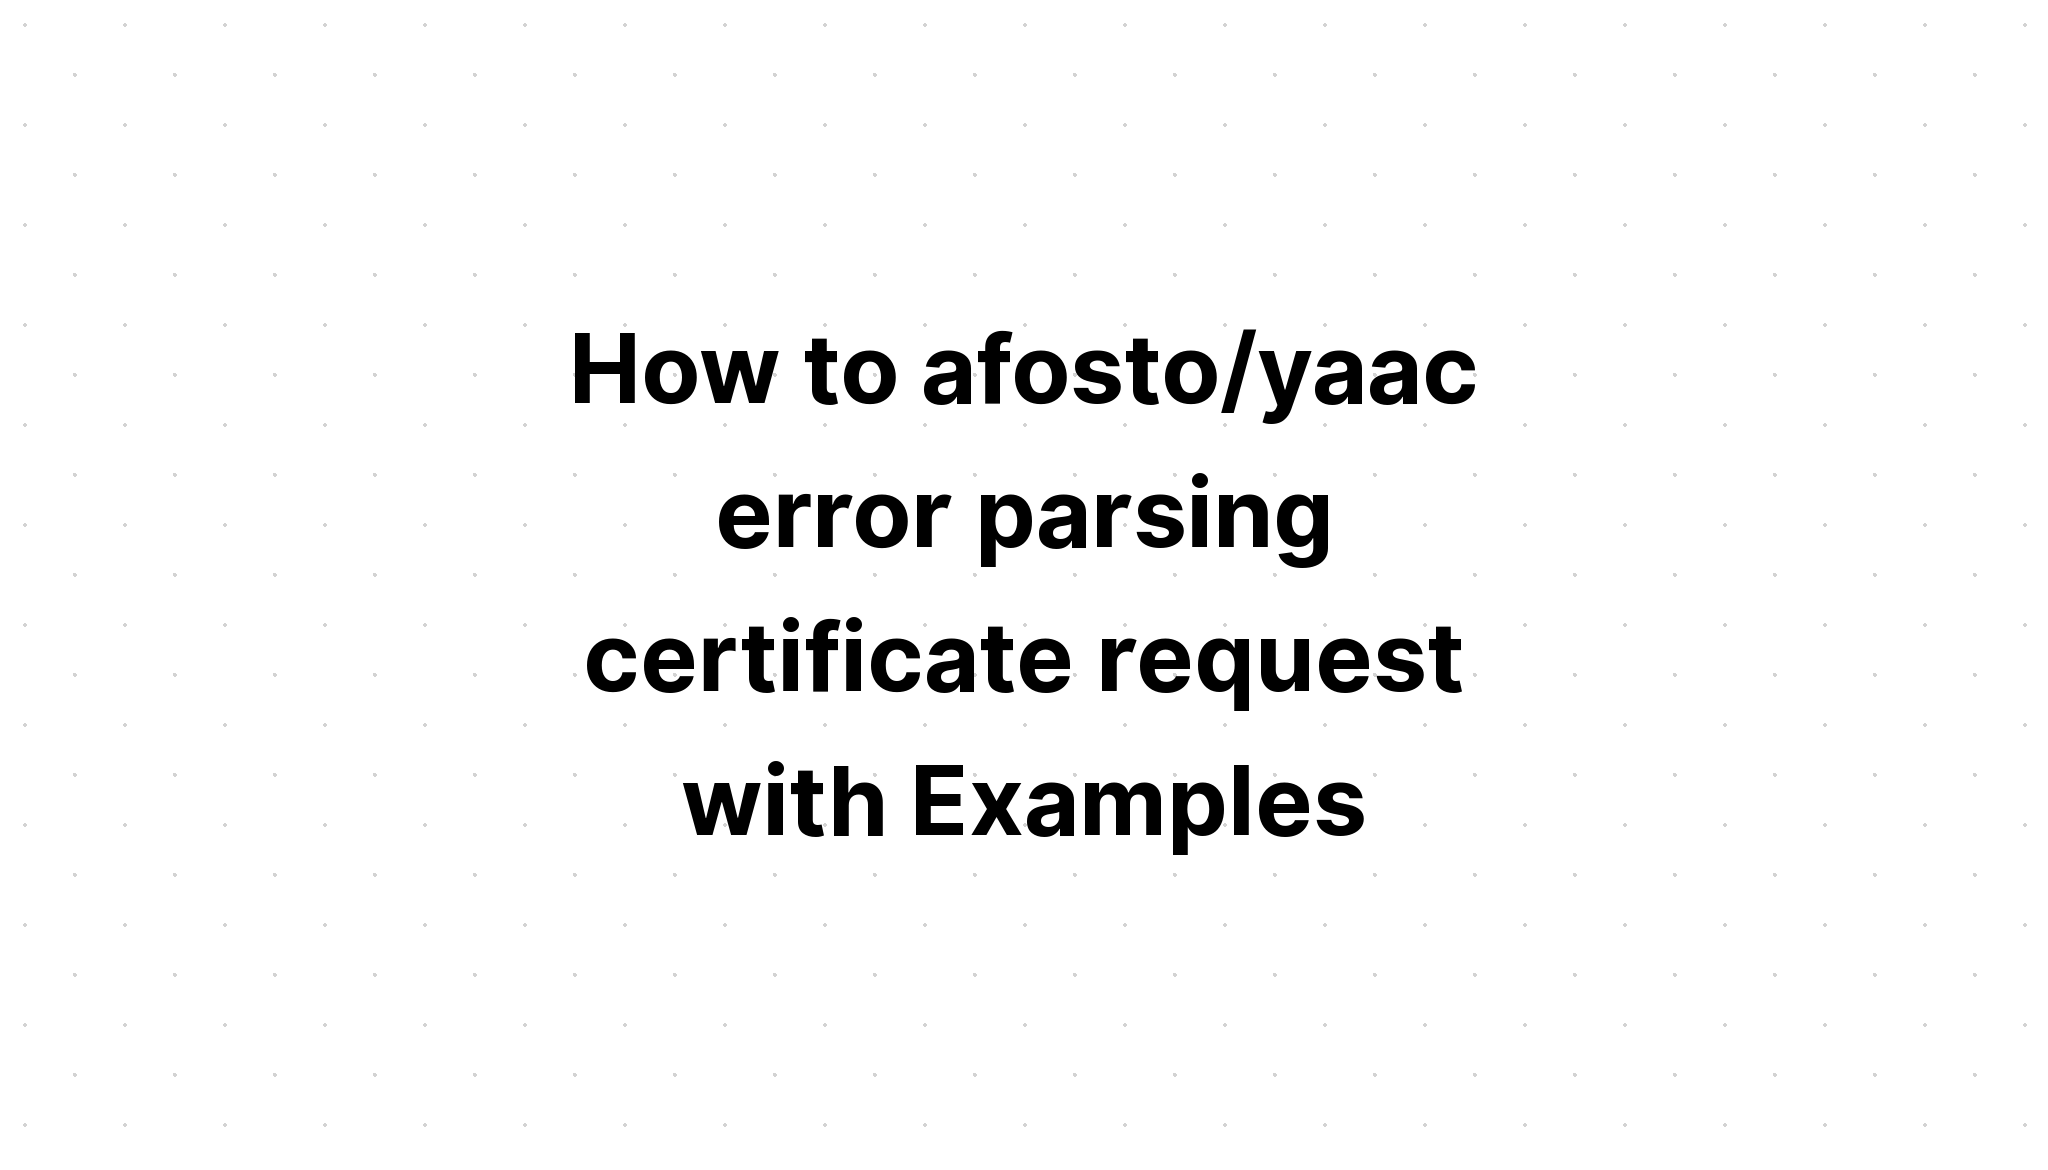 Cách afosto/yaac phân tích lỗi yêu cầu chứng chỉ với các ví dụ